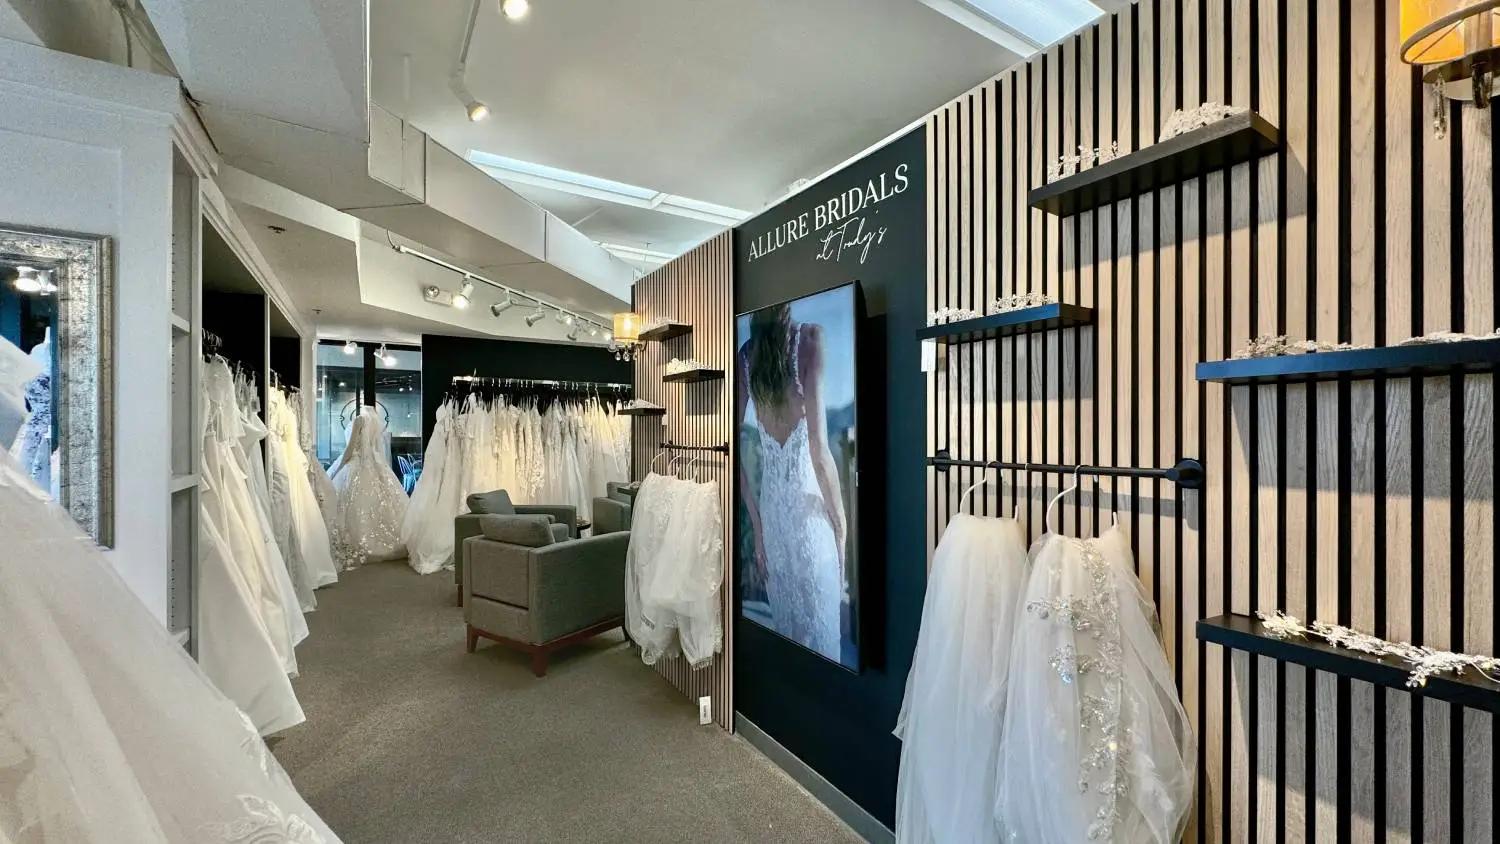 Allure Bridals showroom